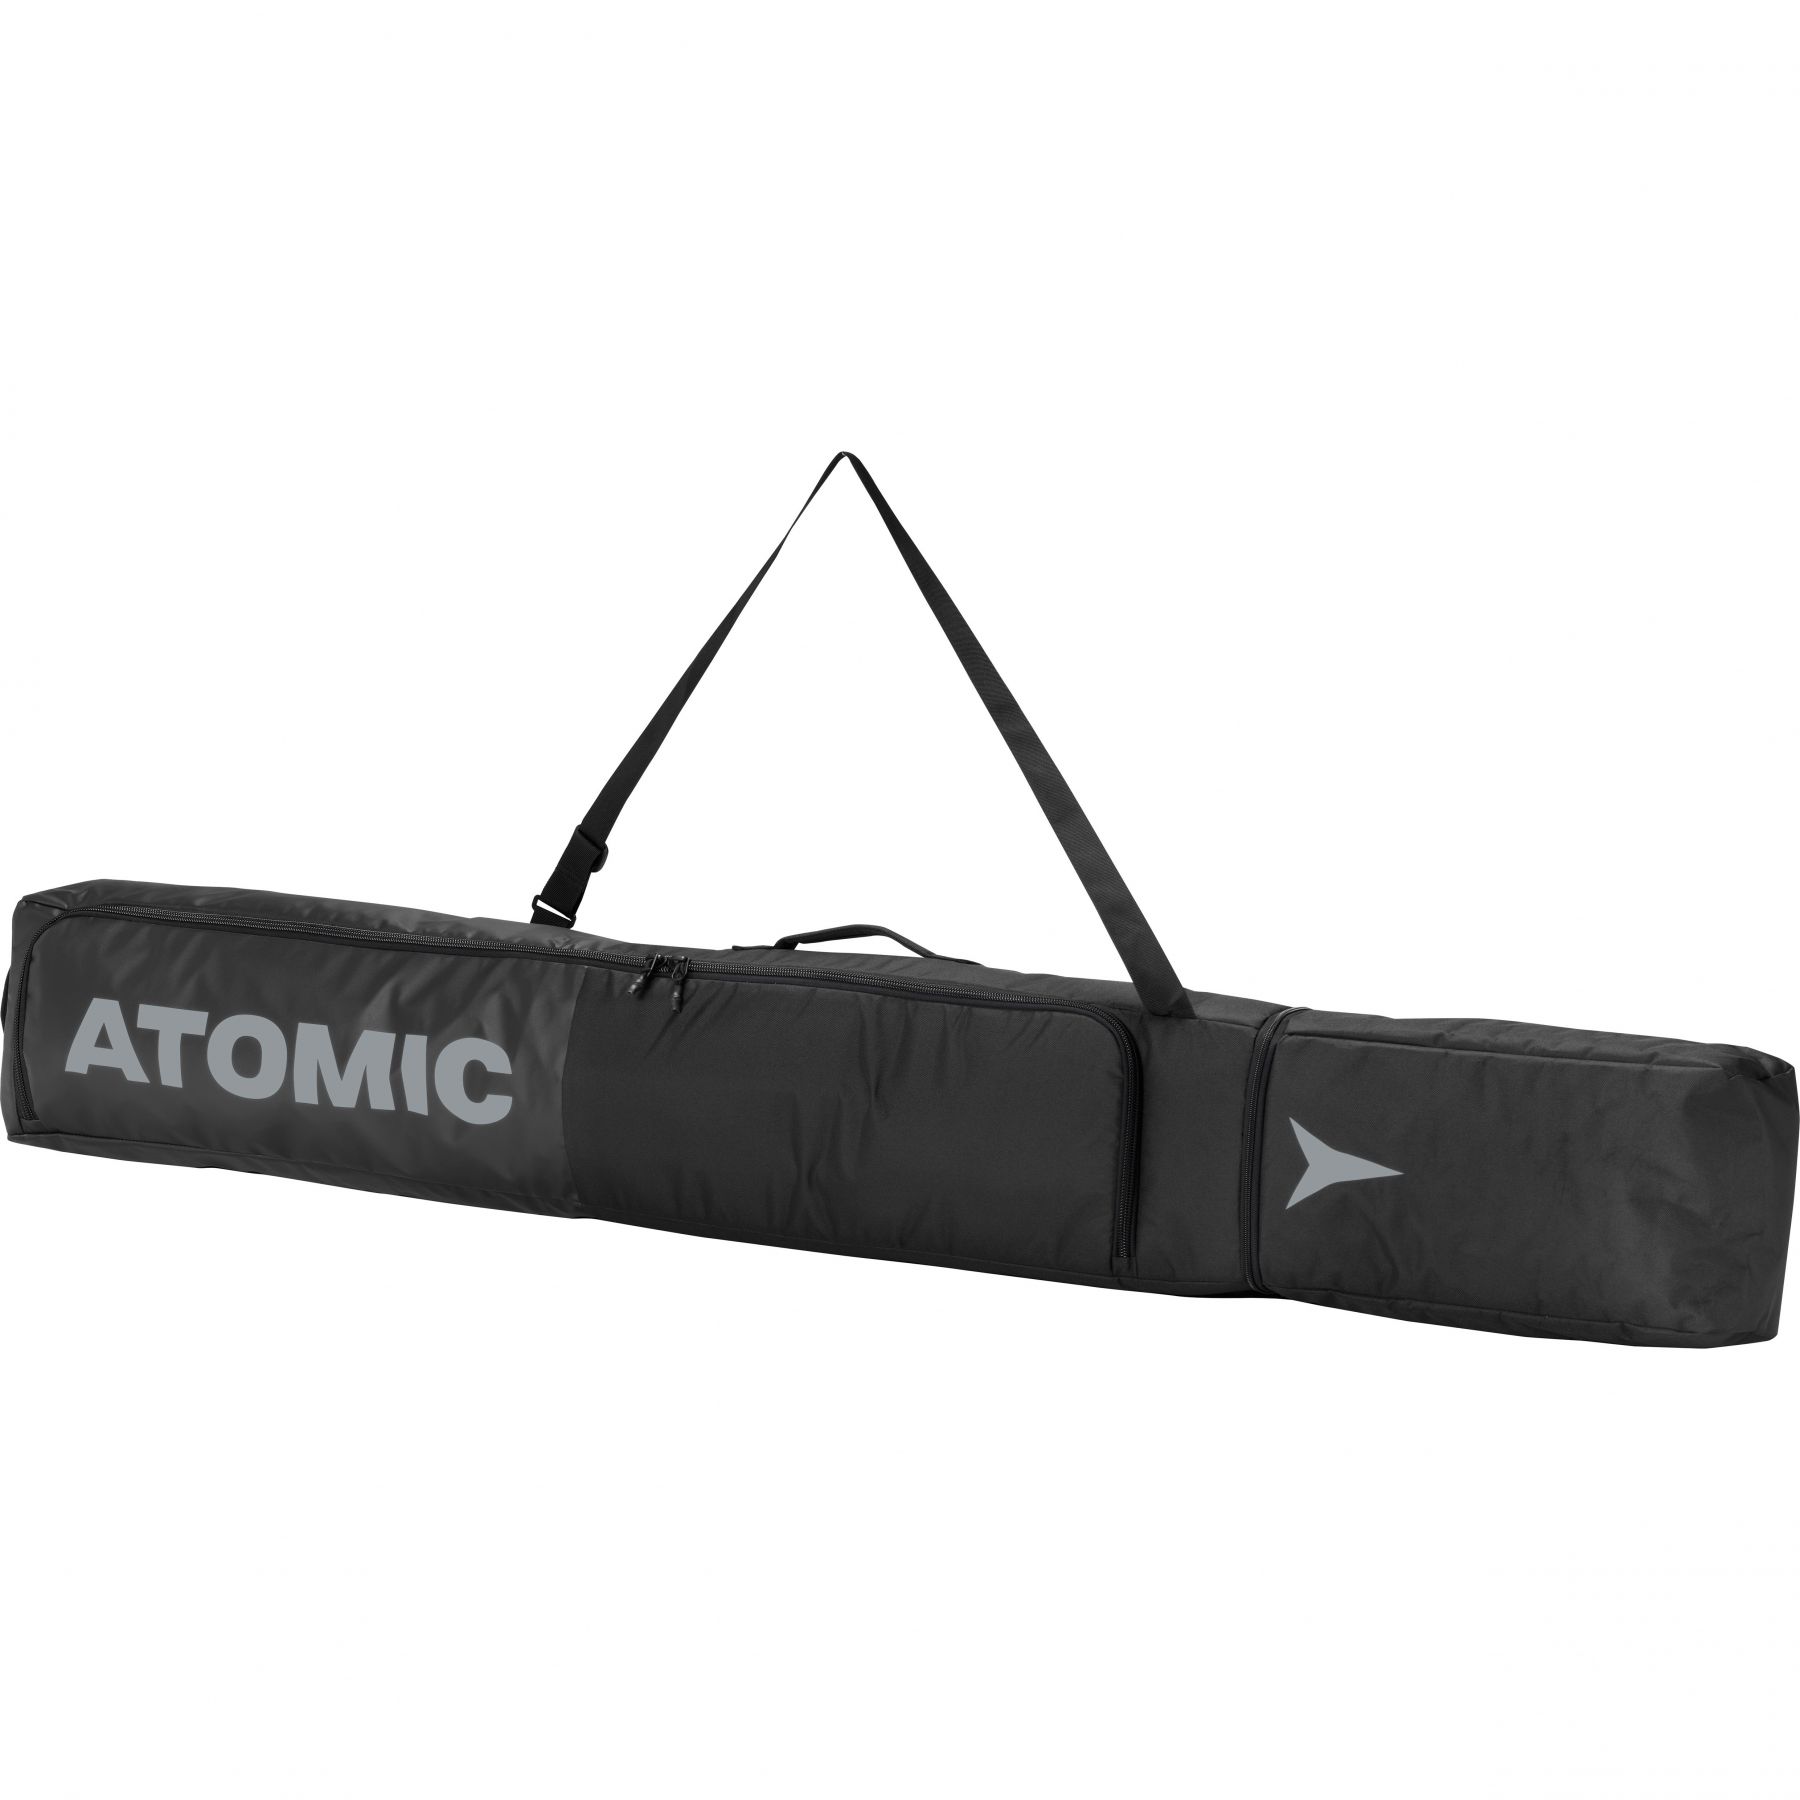 Brug Atomic Ski Bag, sort til en forbedret oplevelse